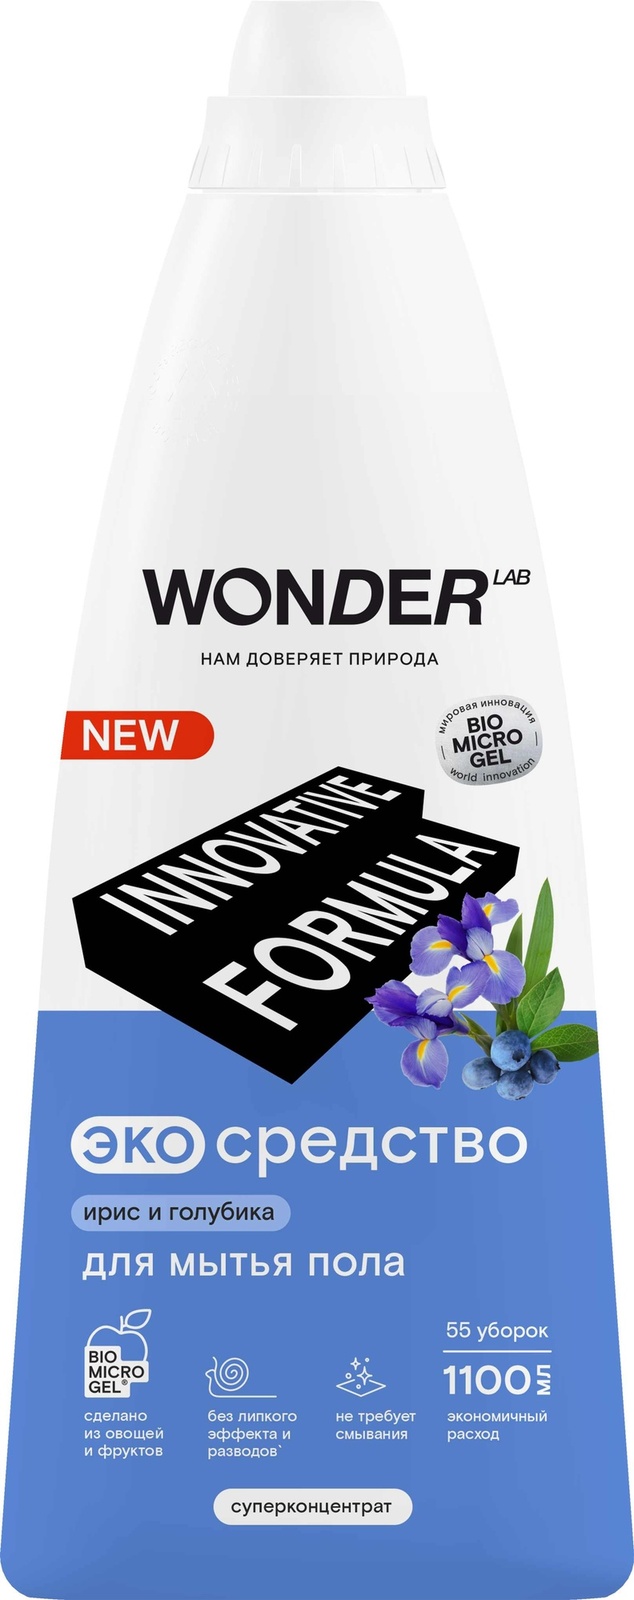 Wonder lab Wonder lab экосредство для мытья пола (ирис и голубика) (1,1 кг)